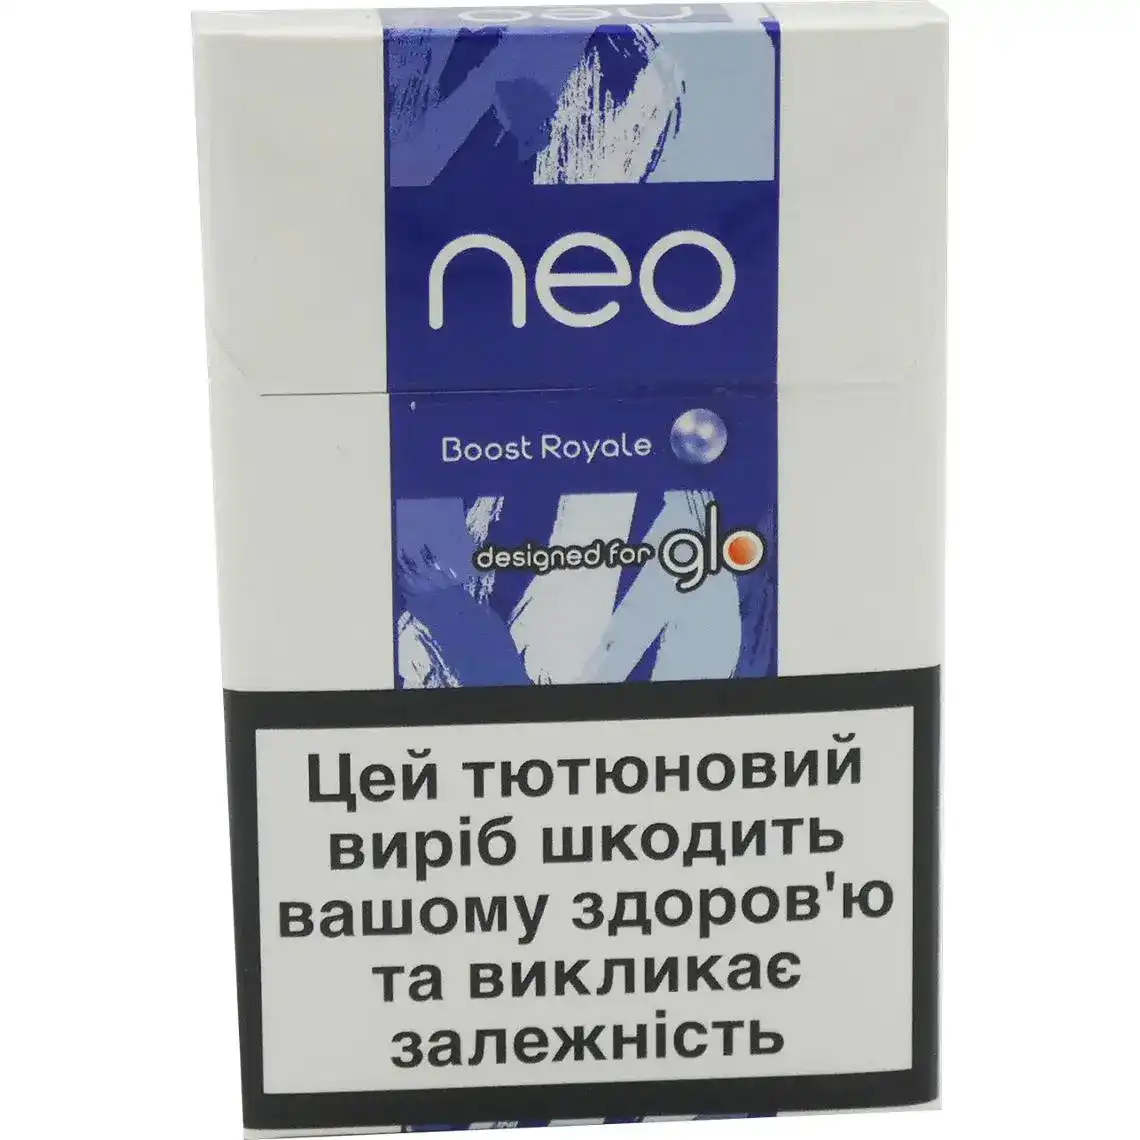 Стіки для нагрівання тютюну Neo Boost Royale 10 шт.